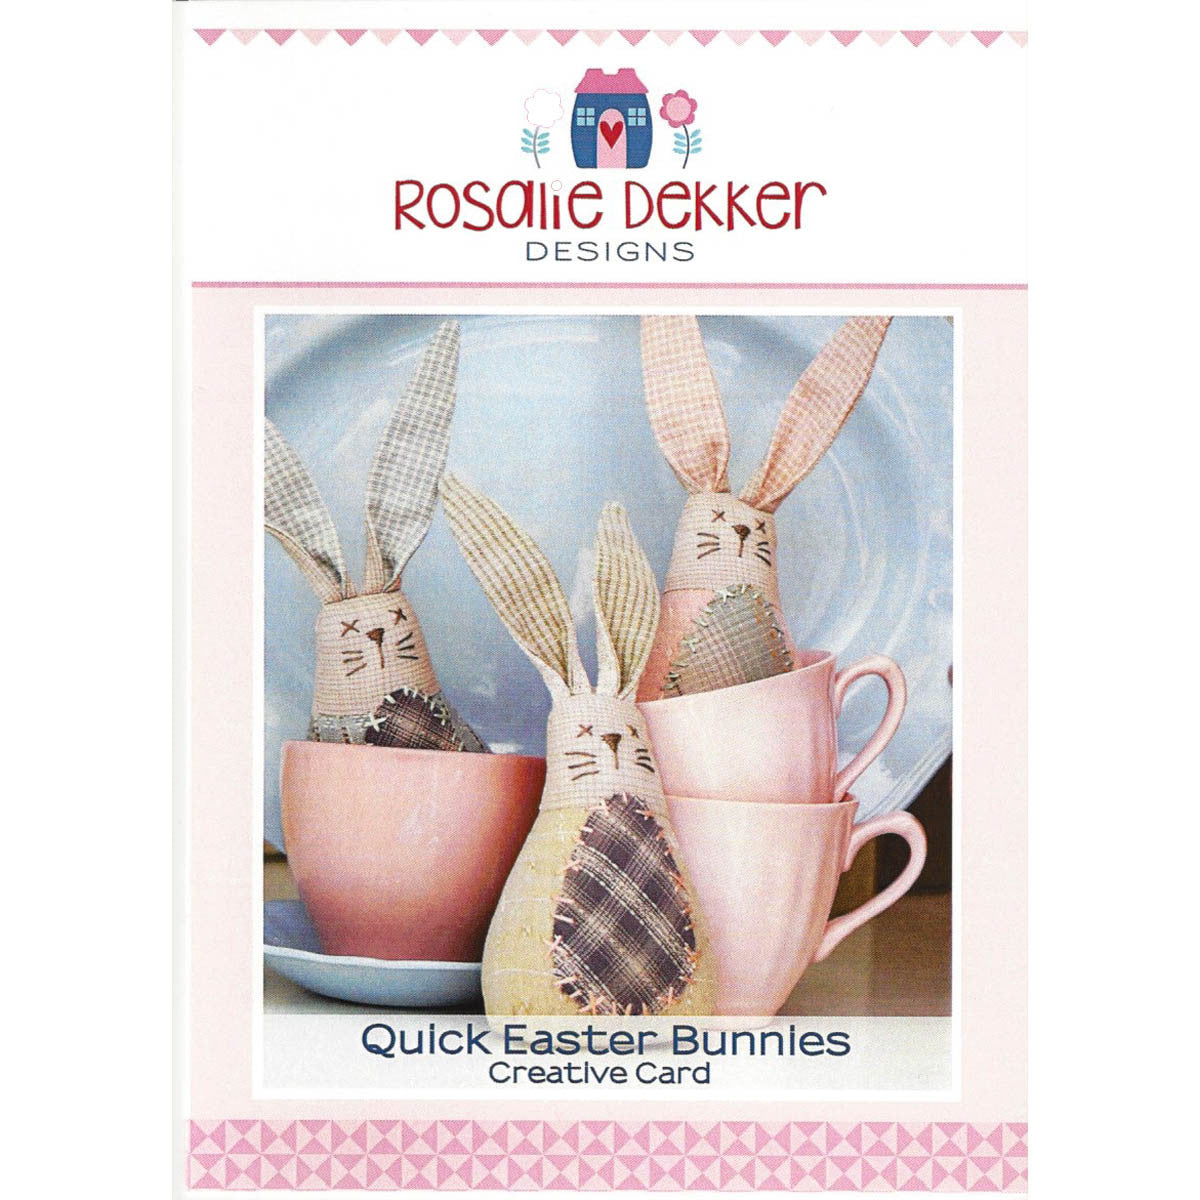 QUICK EASTER BUNNIES - Creative Pattern Card - by Australian Designer Rosalie Dekker (Quinlan)